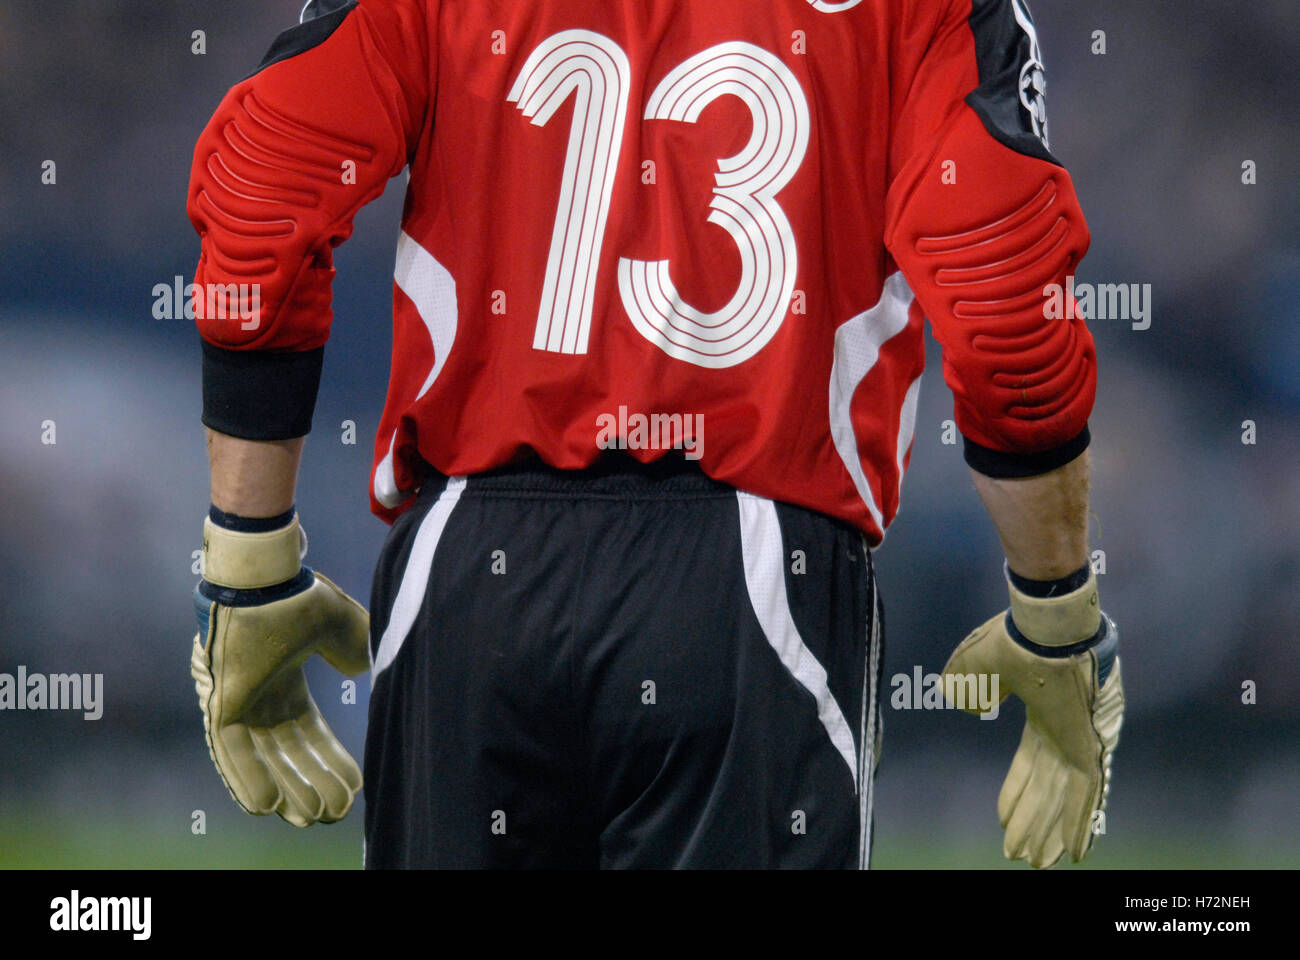 goalkeeper jersey number